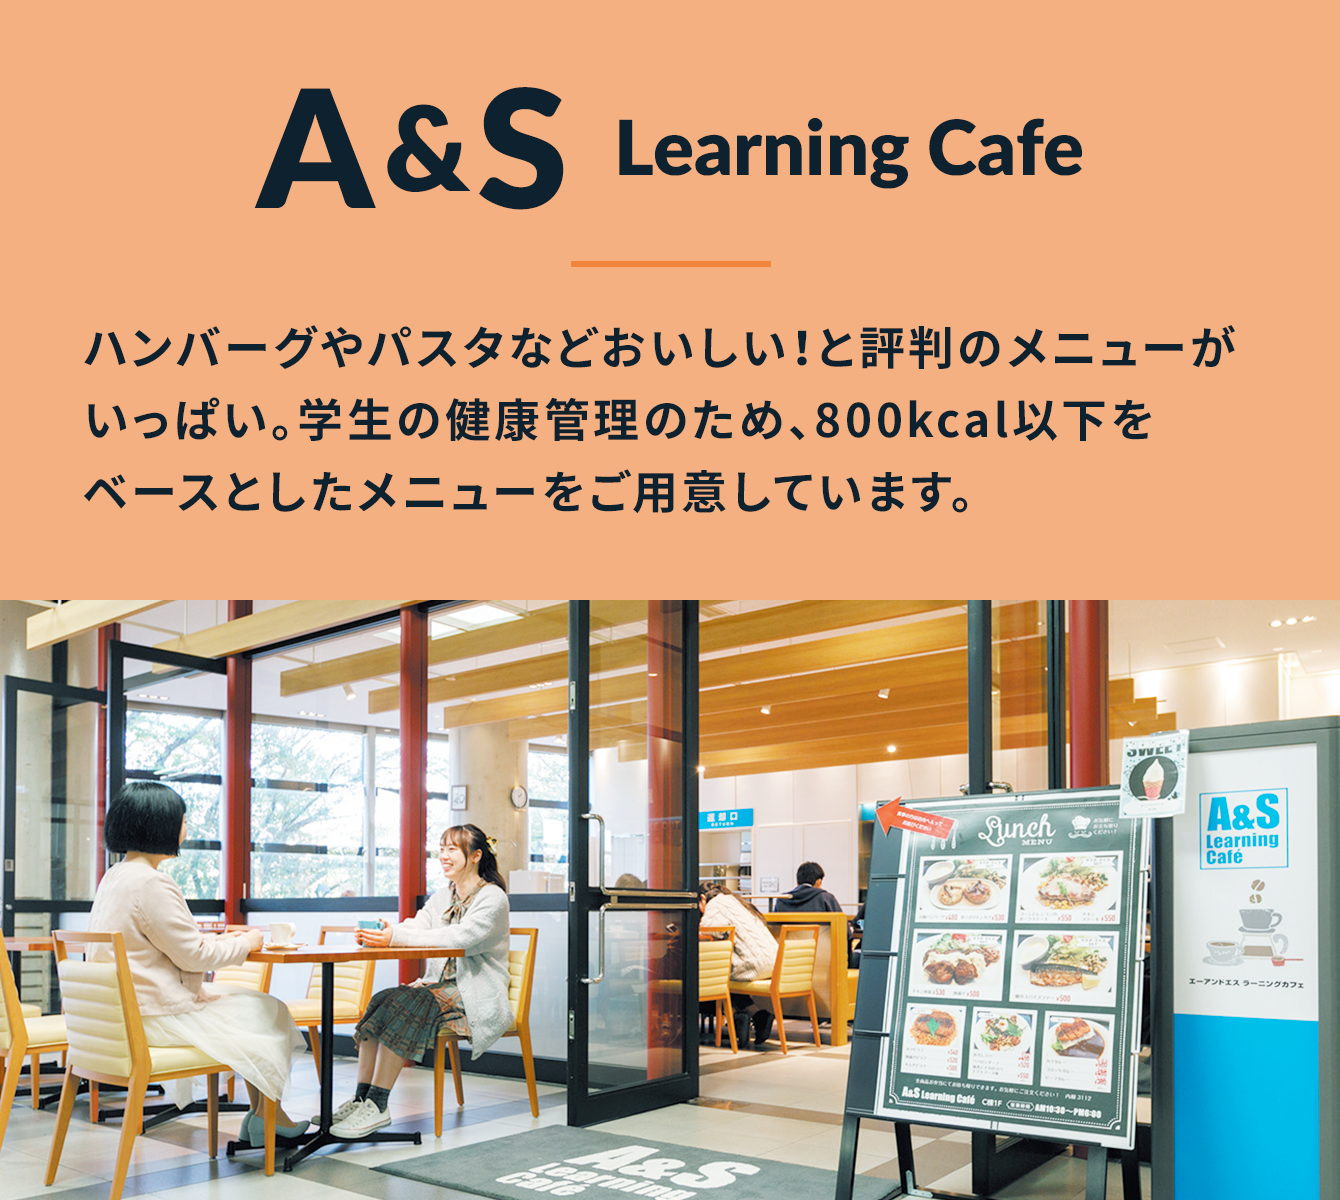 A&S Learning Cafe ハンバーグやパスタなどおいしい！と評判のメニューがいっぱい。学生の健康管理のため、800kcal以下をベースとしたメニューをご用意しています。